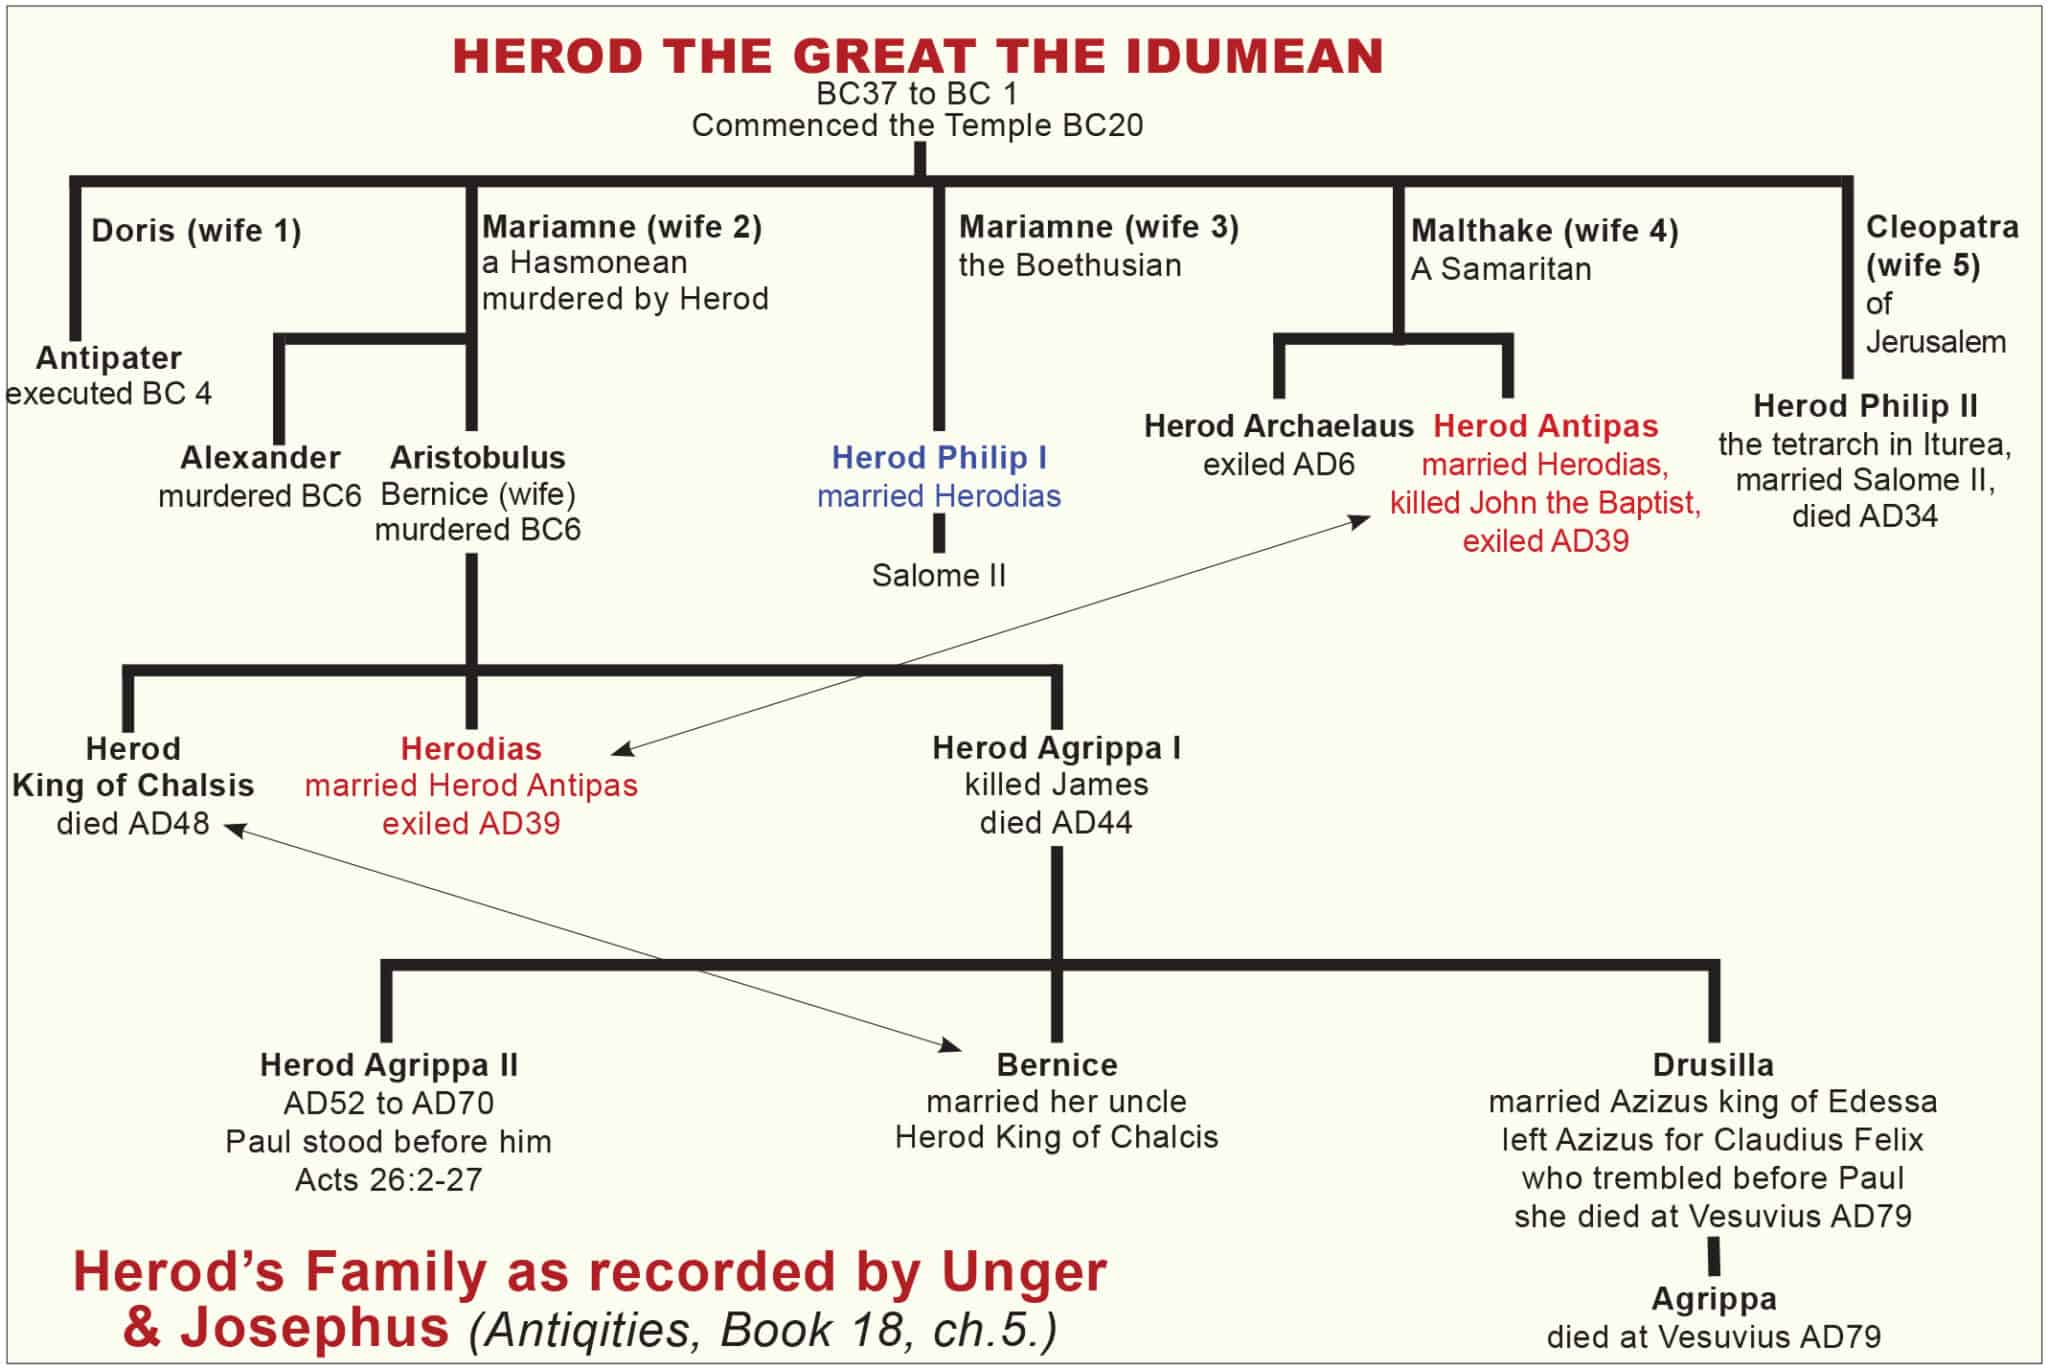 HEROD’S FAMILY